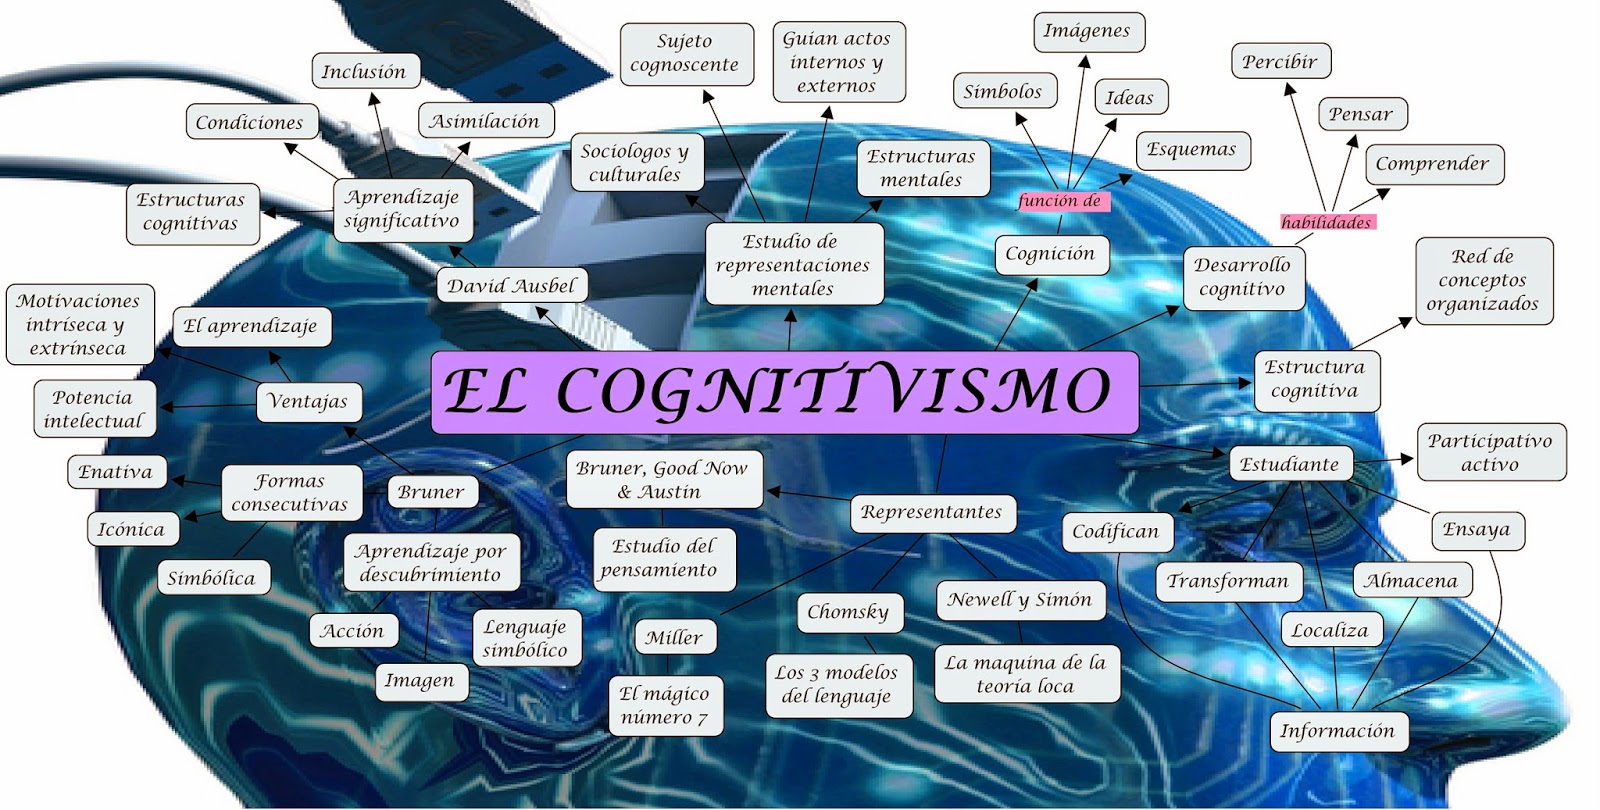 Mapa Mental El Cognitivismo 9274